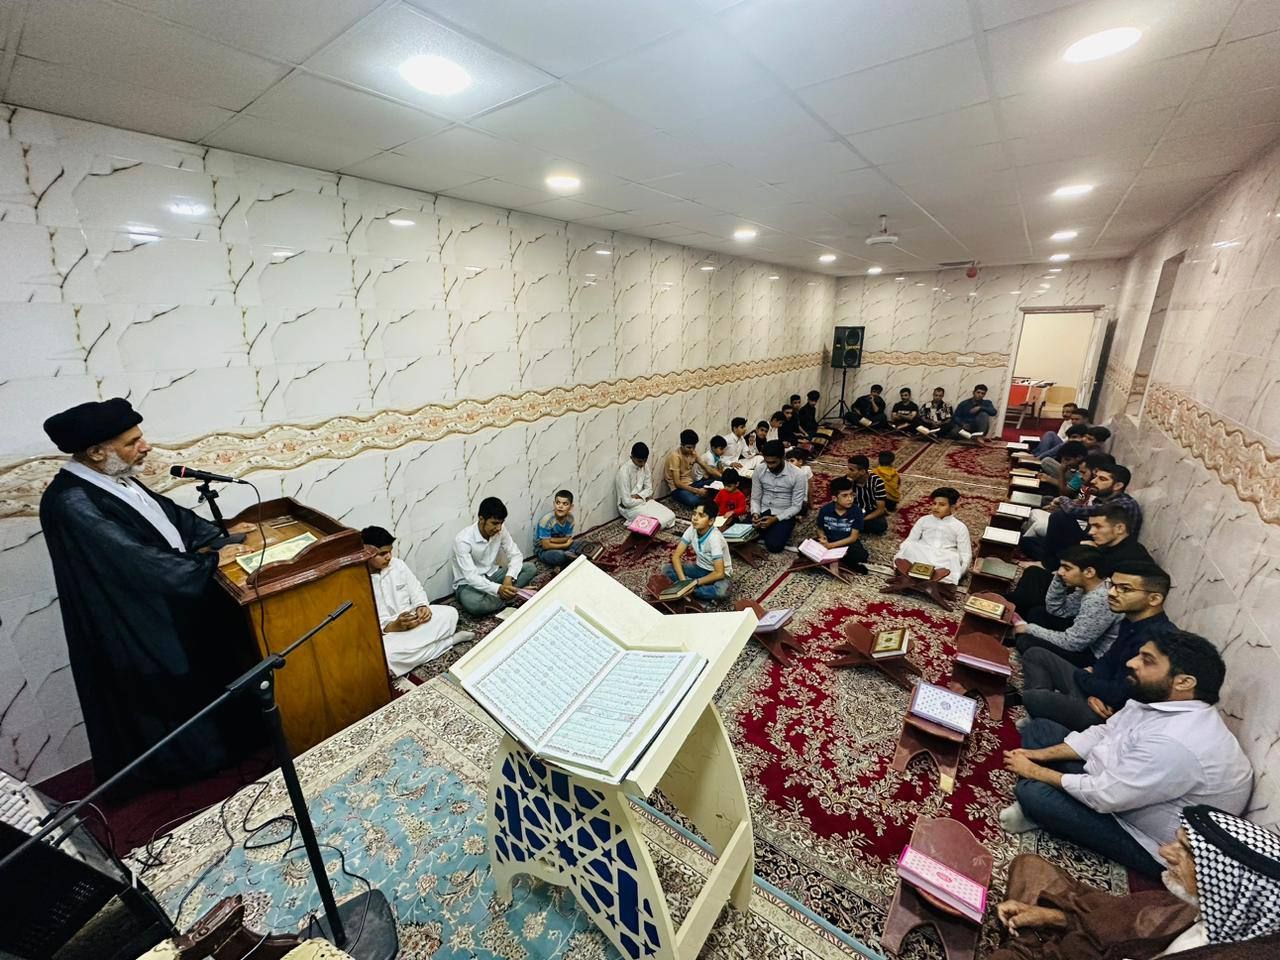 ضمن محافله الدورية معهد القرآن الكريم يقيم محفلًا قرآنيًا في قضاء الهندية